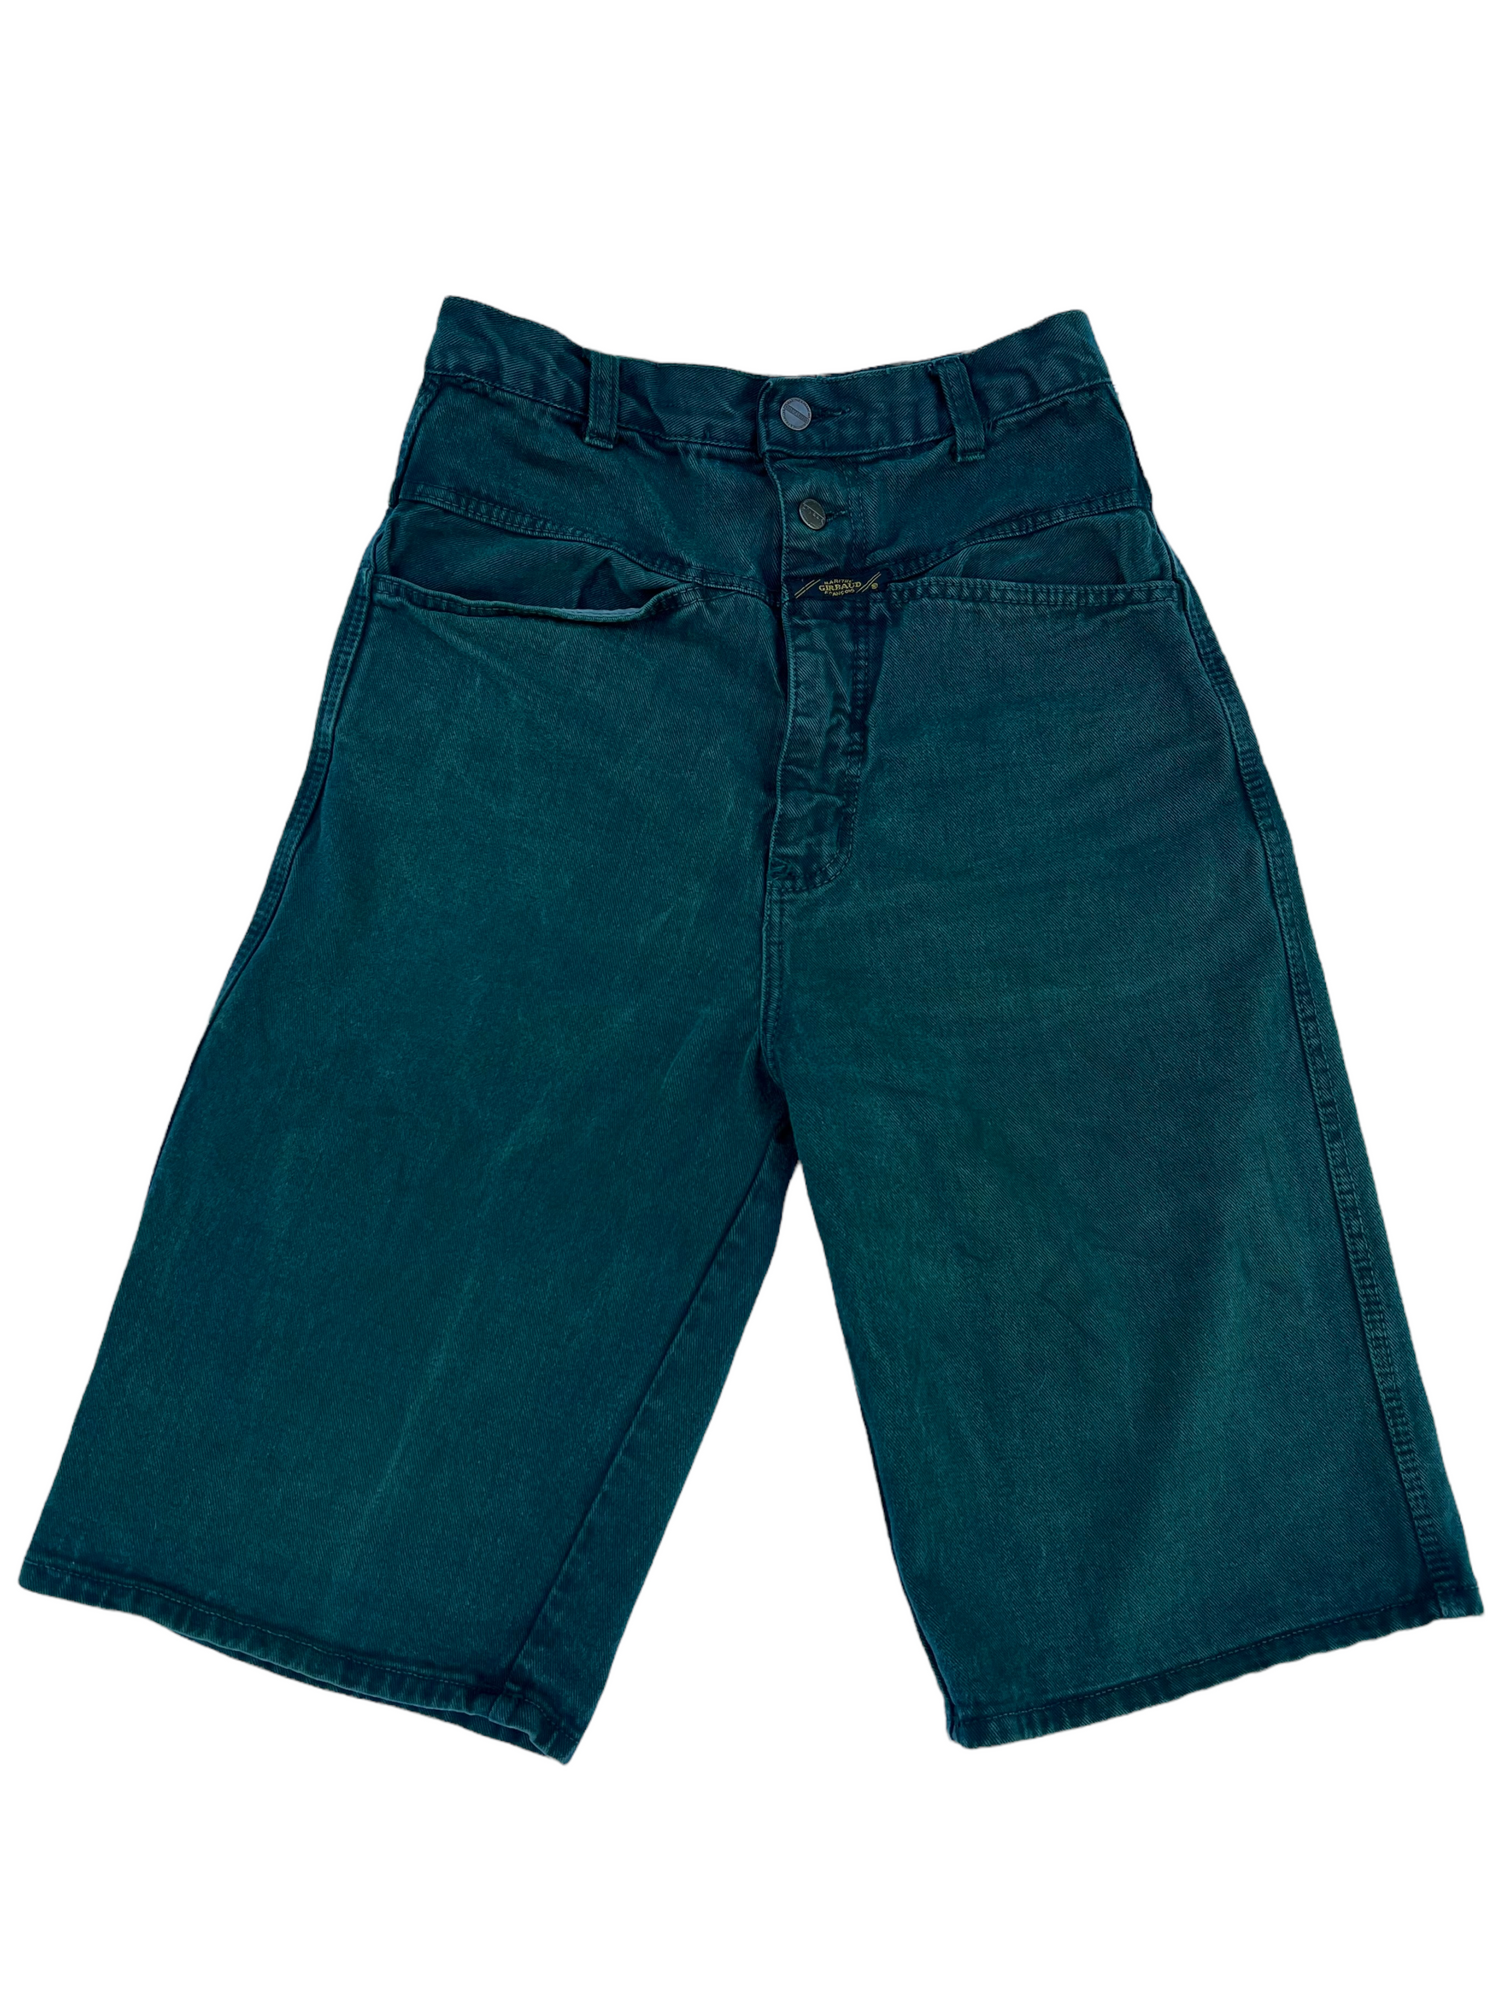 Thrifts 90s Luhna jorts deep – green